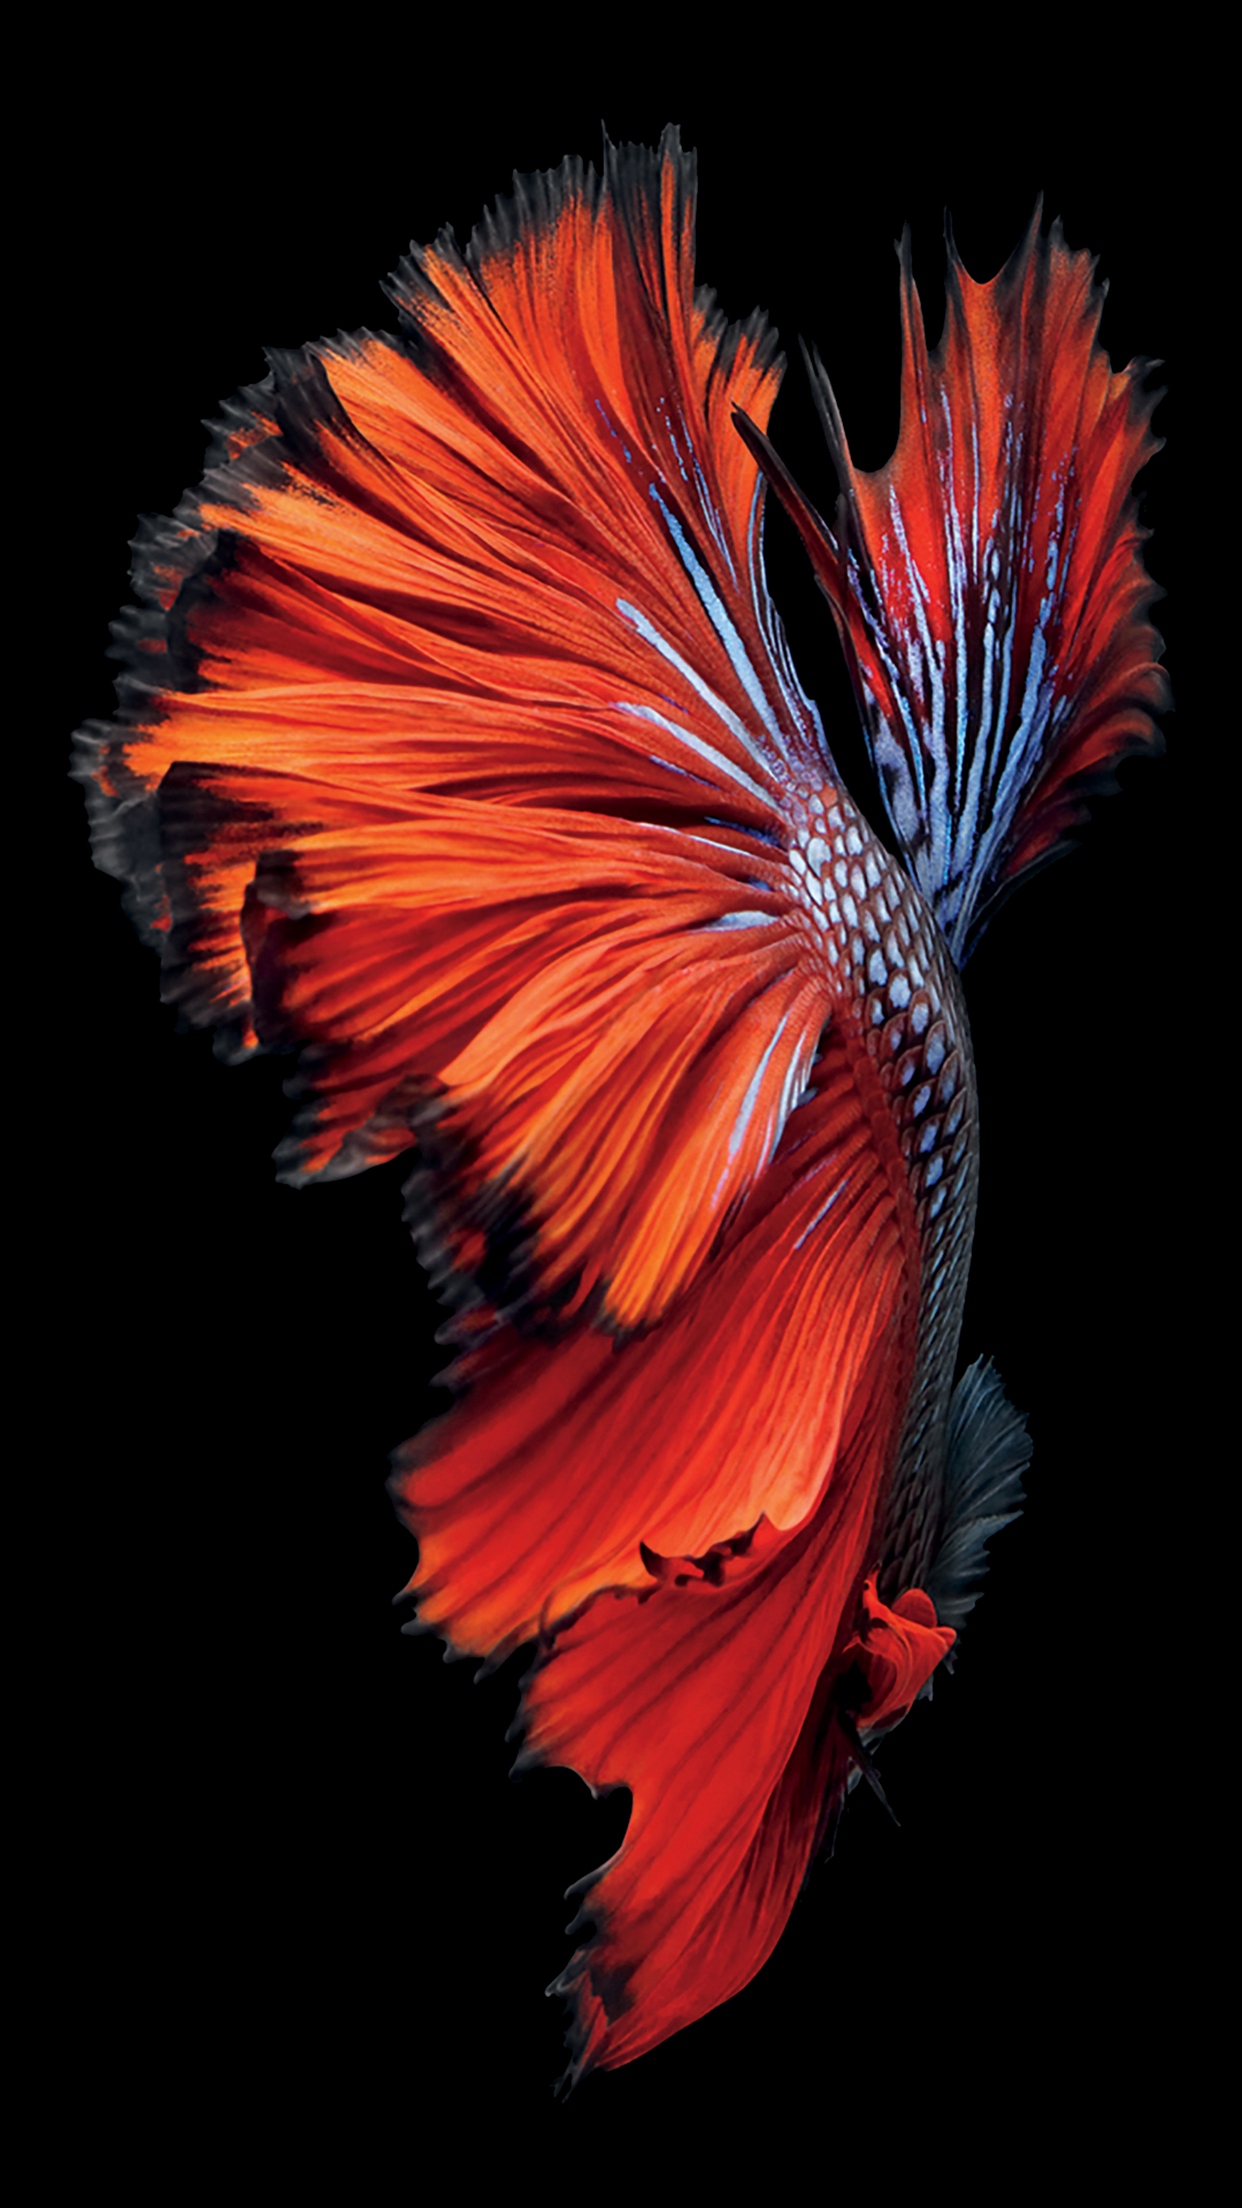 fond d'écran de poisson iphone 6s,rouge,orange,plume,plante,pétale